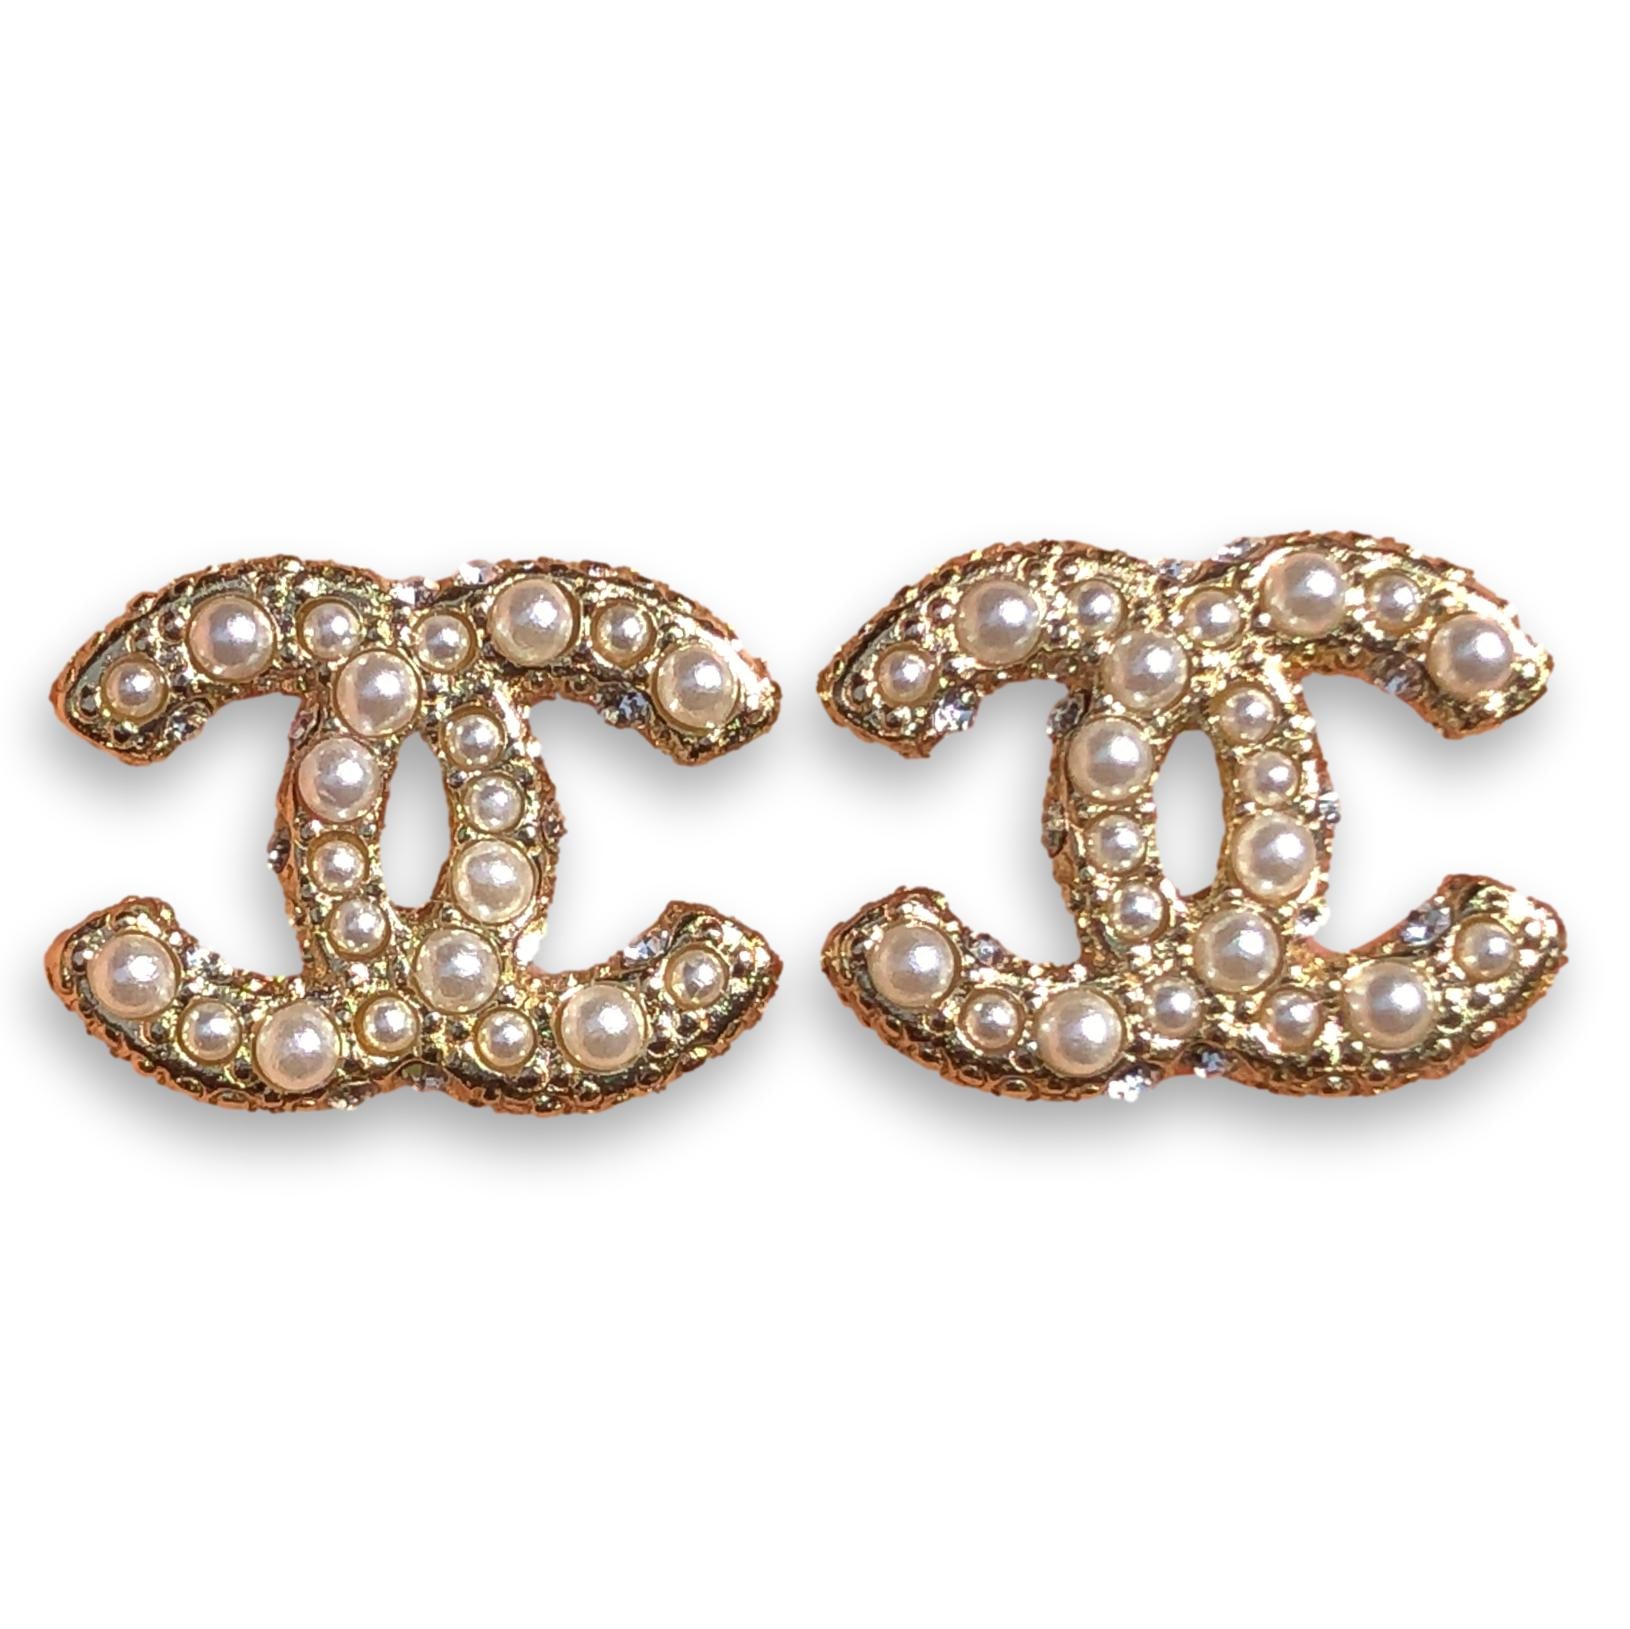 Chanel Earrings Uk on Sale  dukesindiacom 1696398262